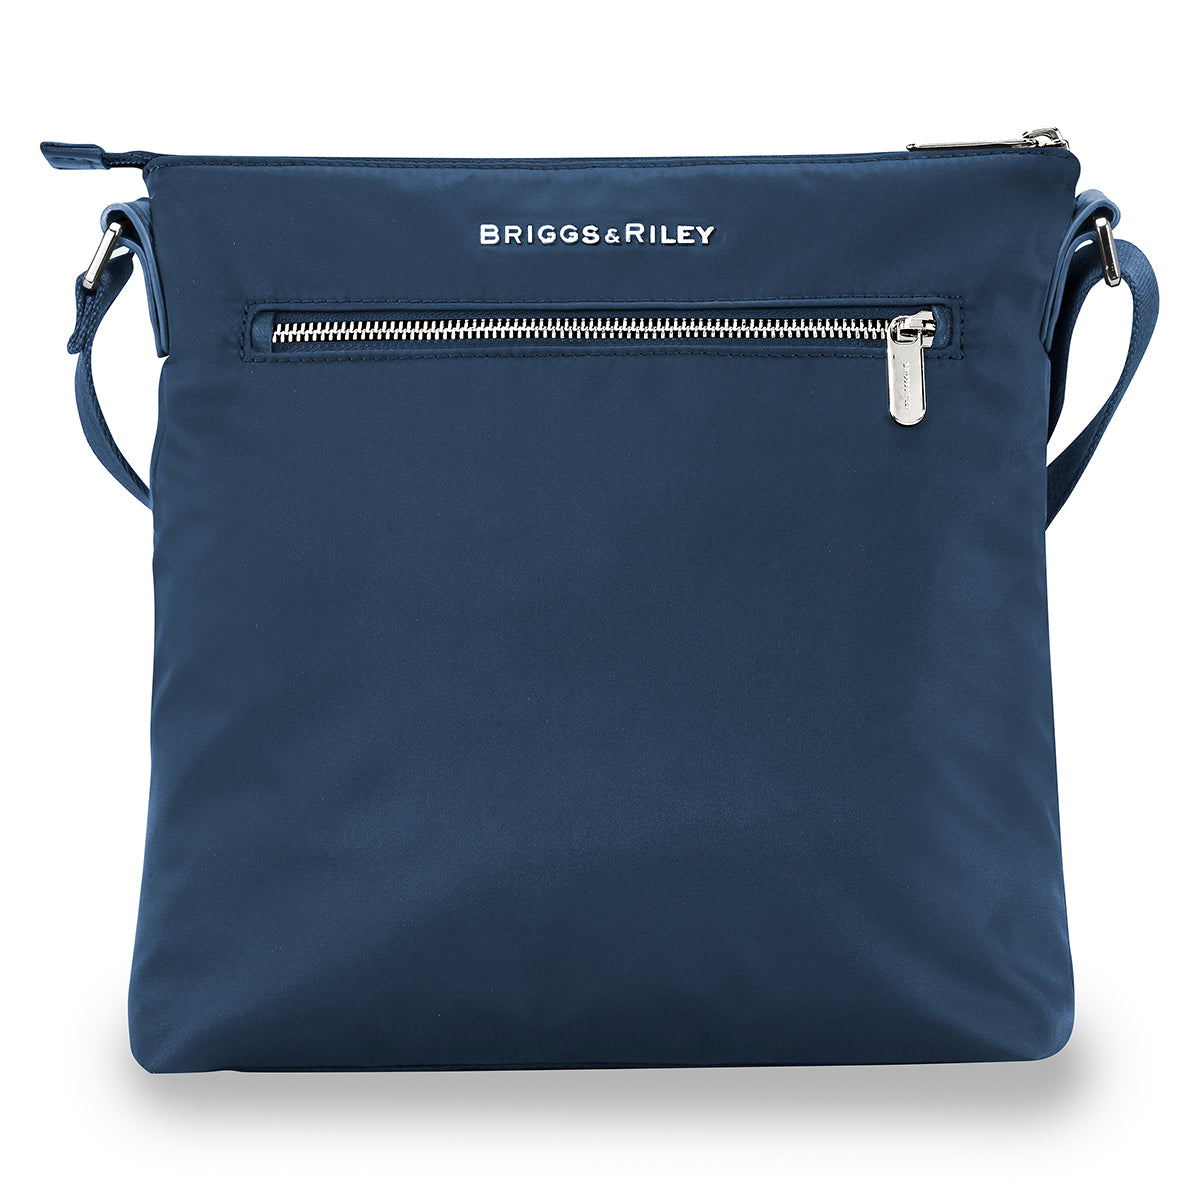 Briggs & Riley Rhapsody Crossbody Bag